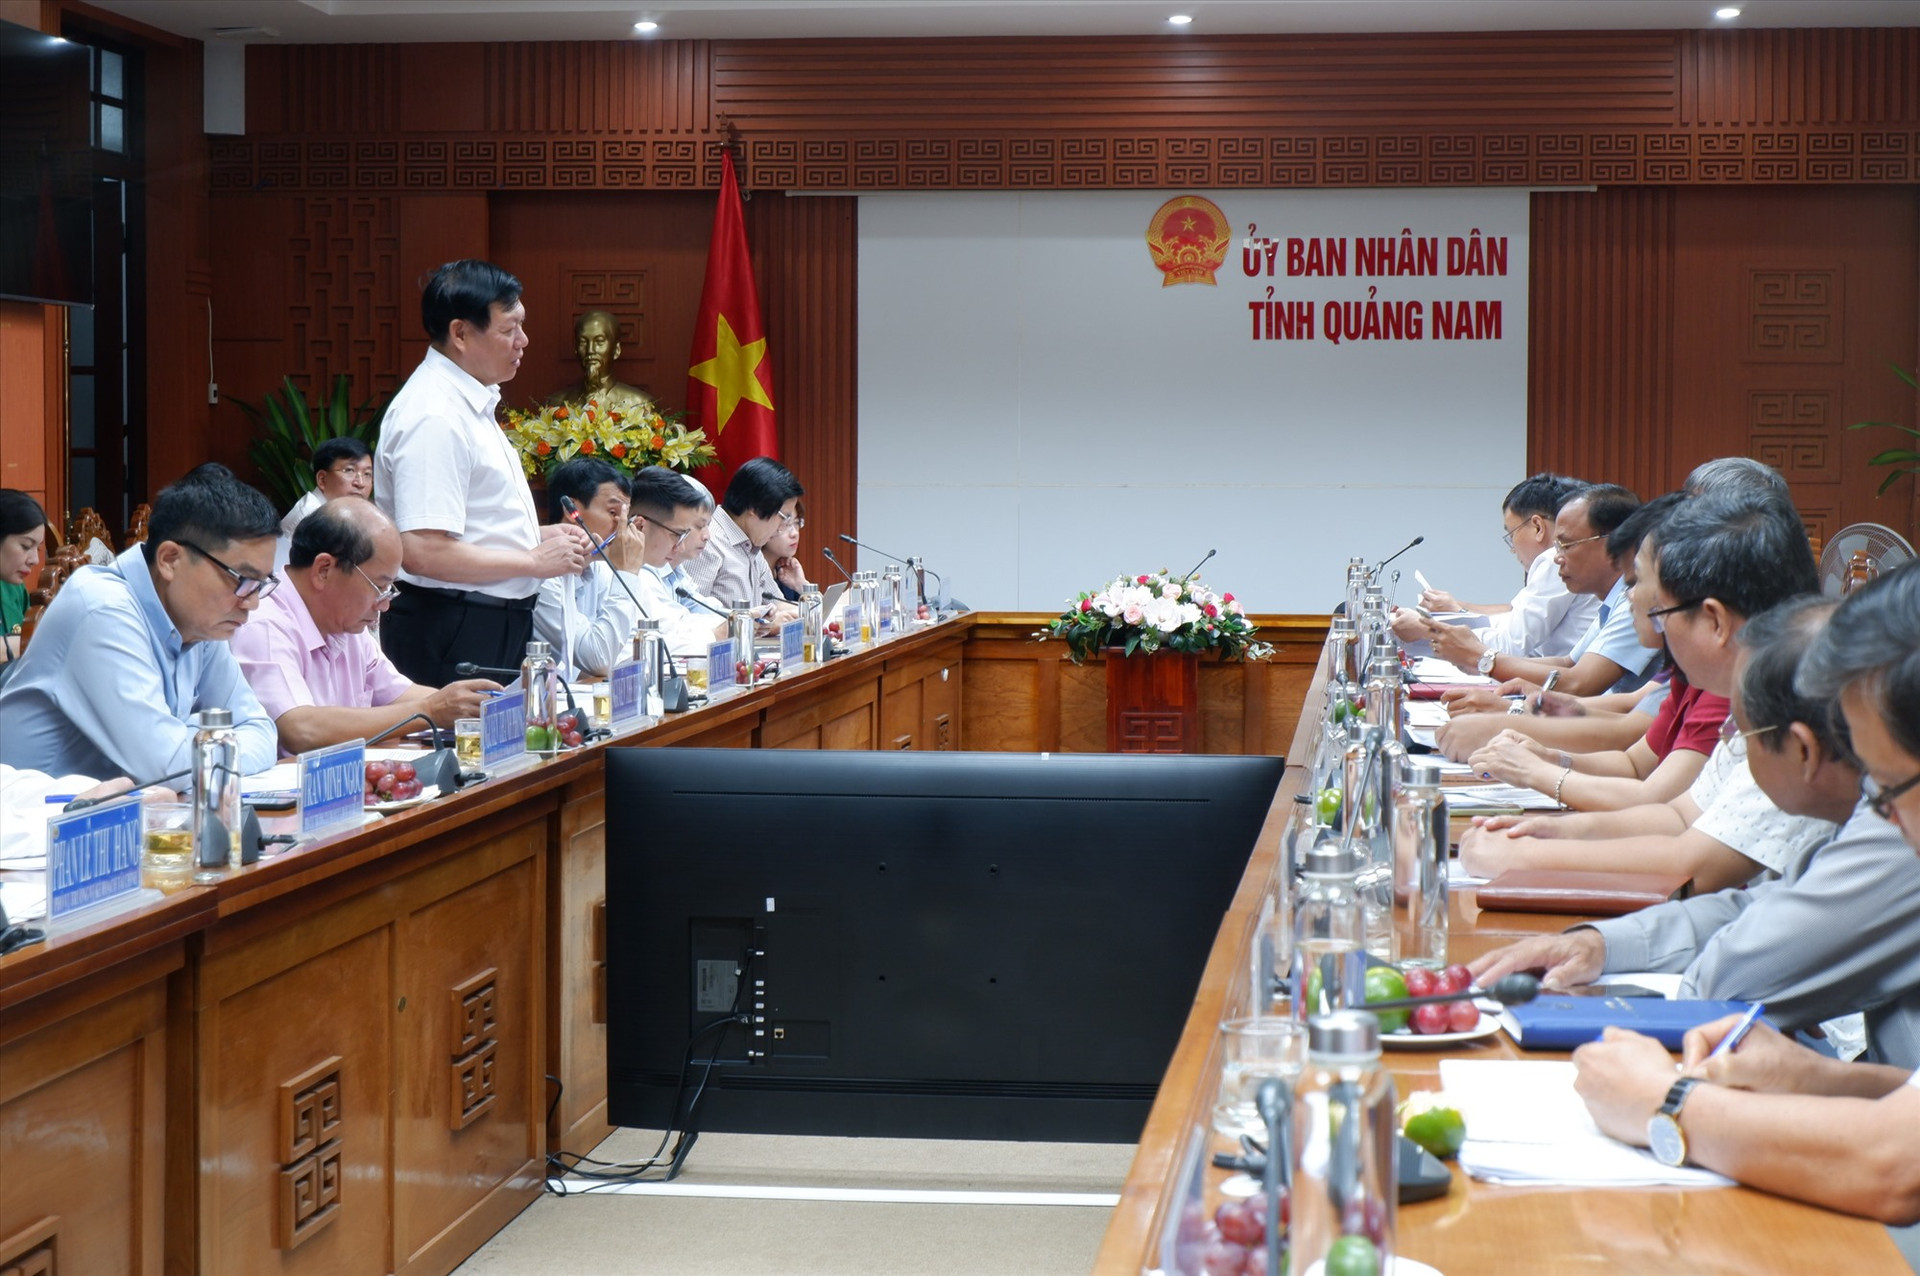 Đoàn công tác Bộ Y tế do Thứ trưởng Đỗ Xuân Tuyên làm Trưởng đoàn làm việc cùng UBND tỉnh Quảng Nam. Ảnh: X.H